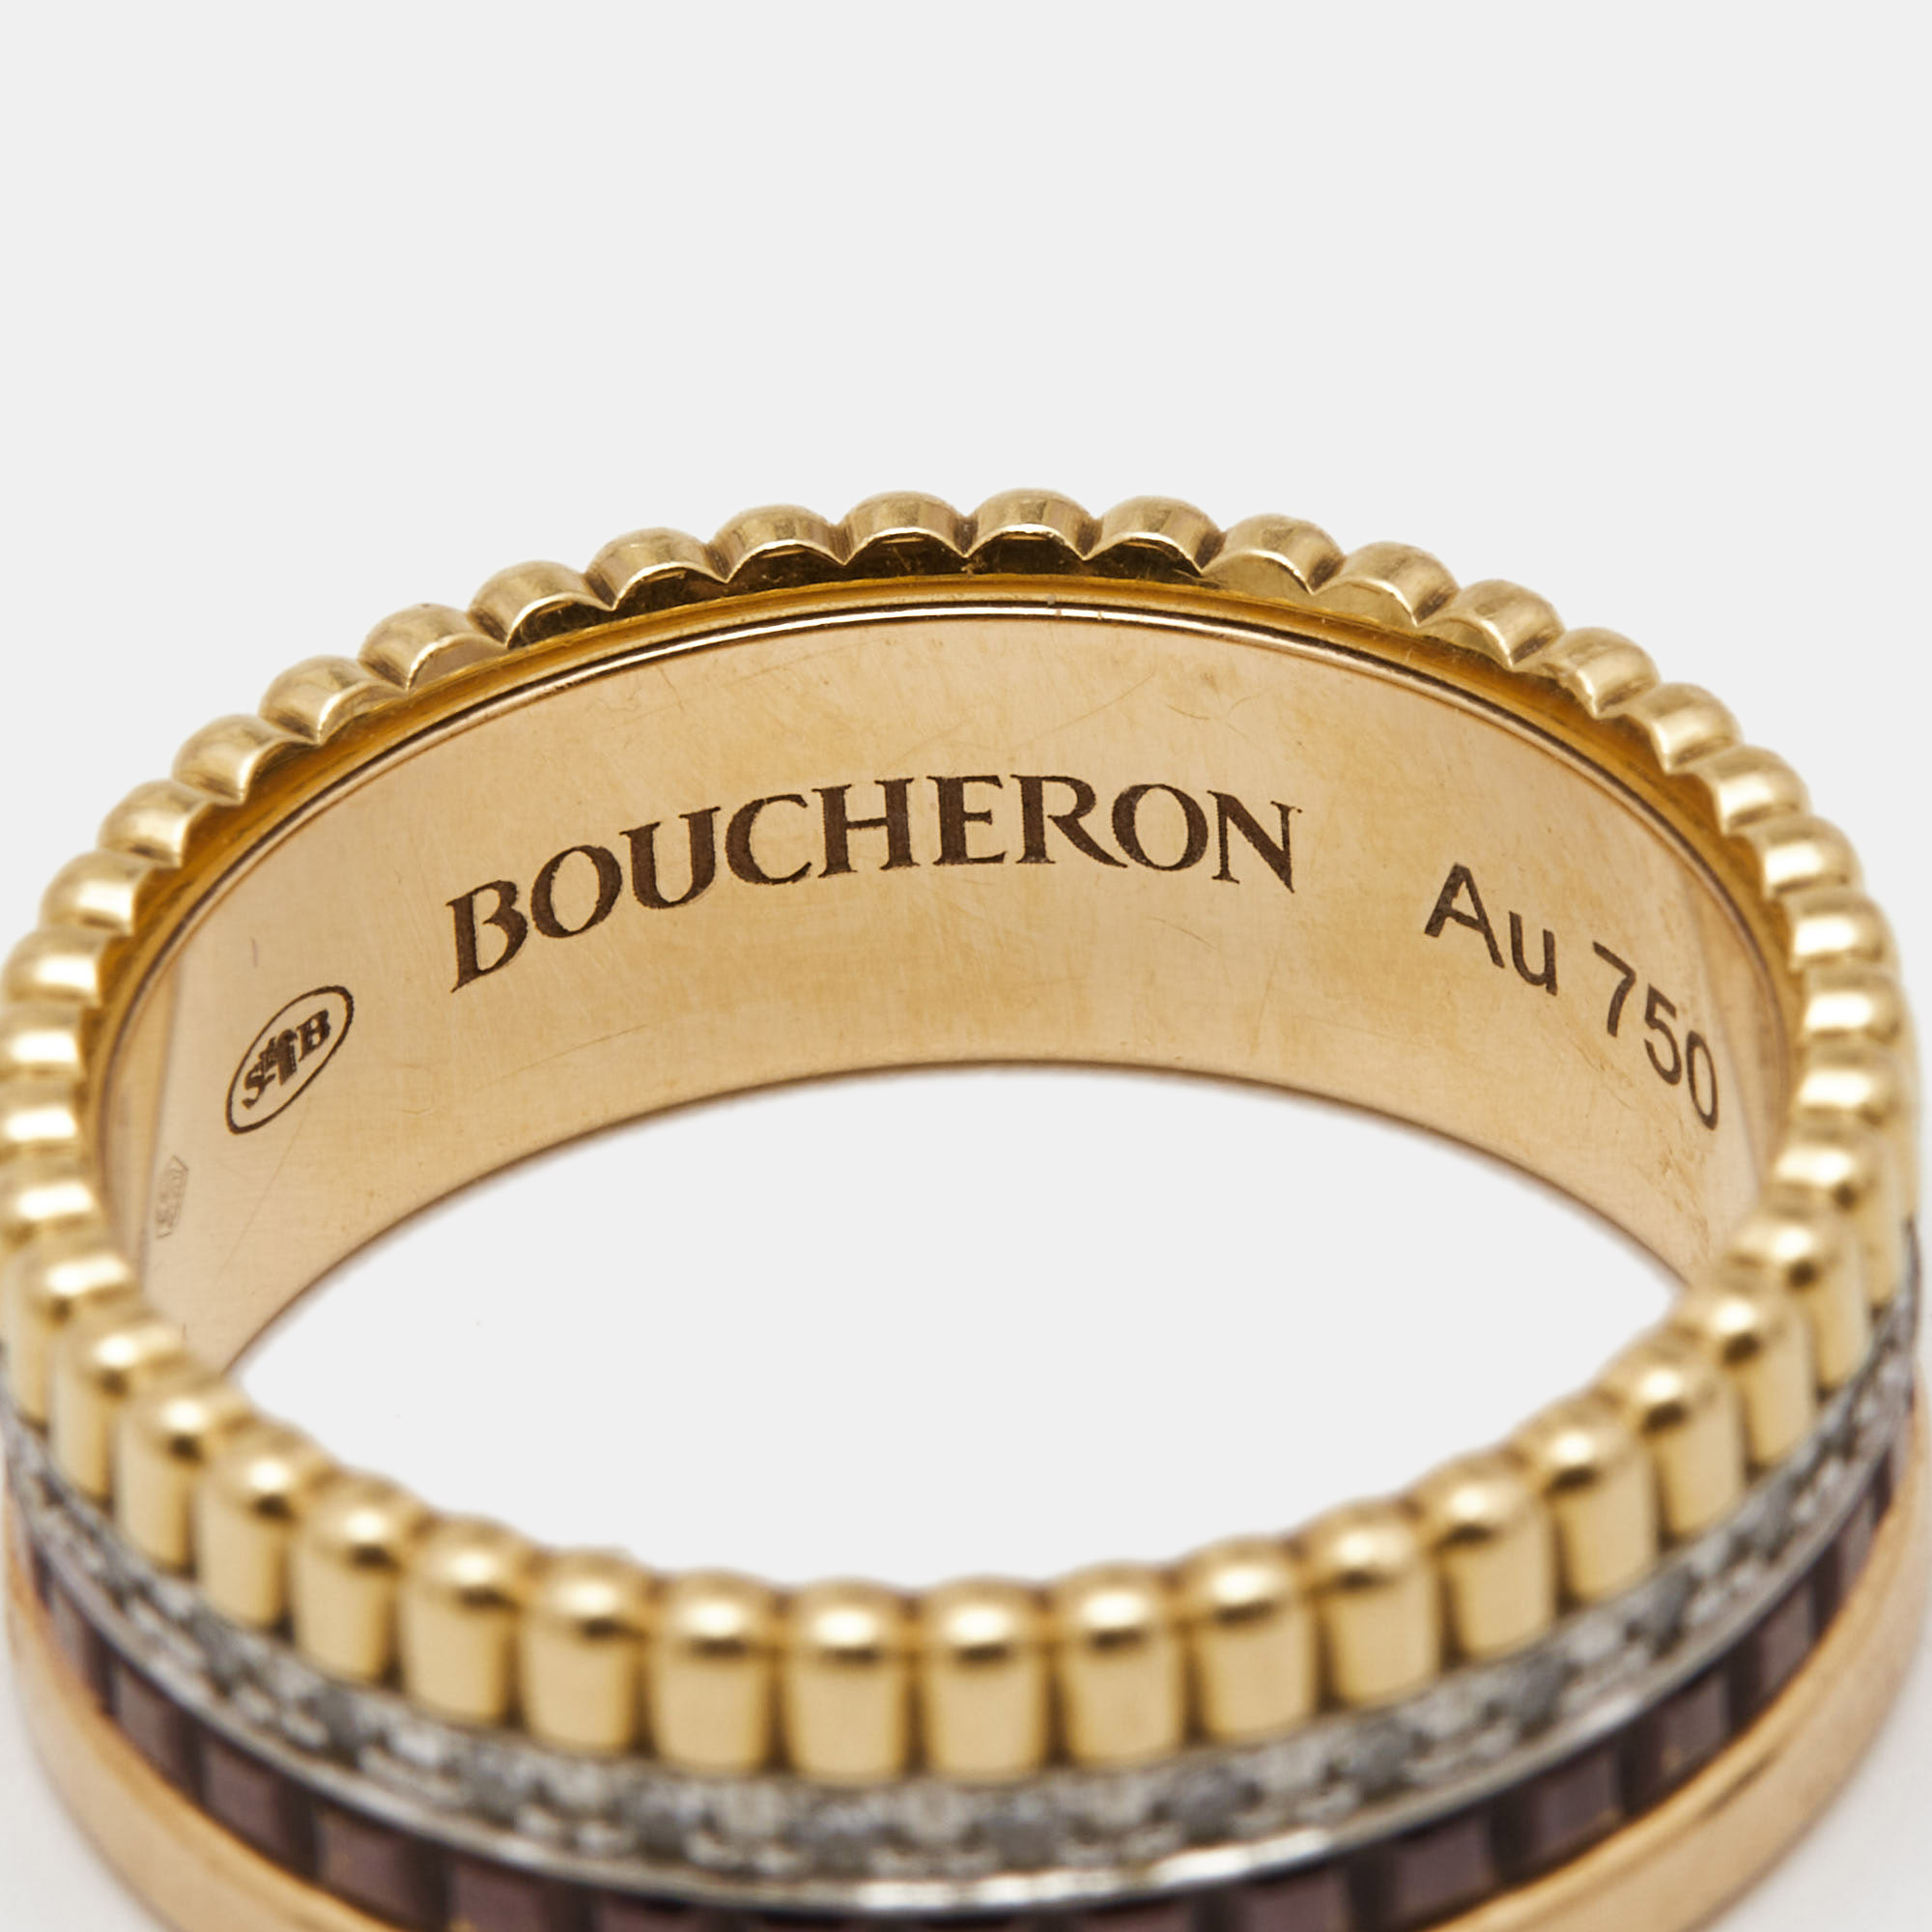 Boucheron Quatre Classique Diamonds 18k Three Tone Gold Small Ring Size 52